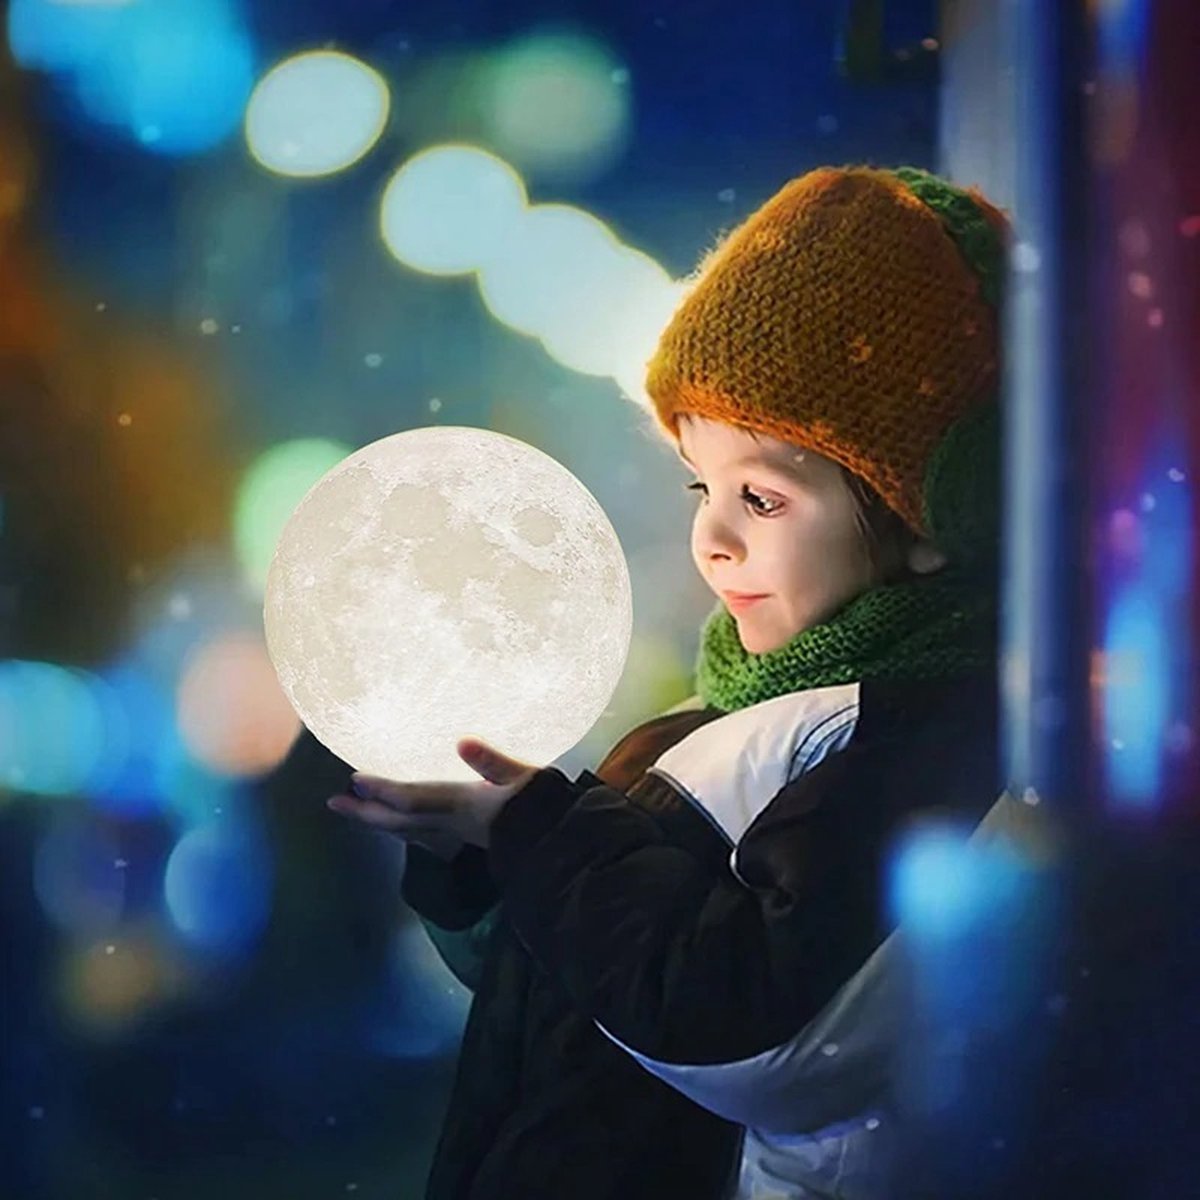 Ariko Nachtlampe 3D Mond - Sternenlicht - 15 cm - Tischlampe - Batterie 15 bis 89 Stunden - 16 dimmbare LED-Farben und Fernbedienung